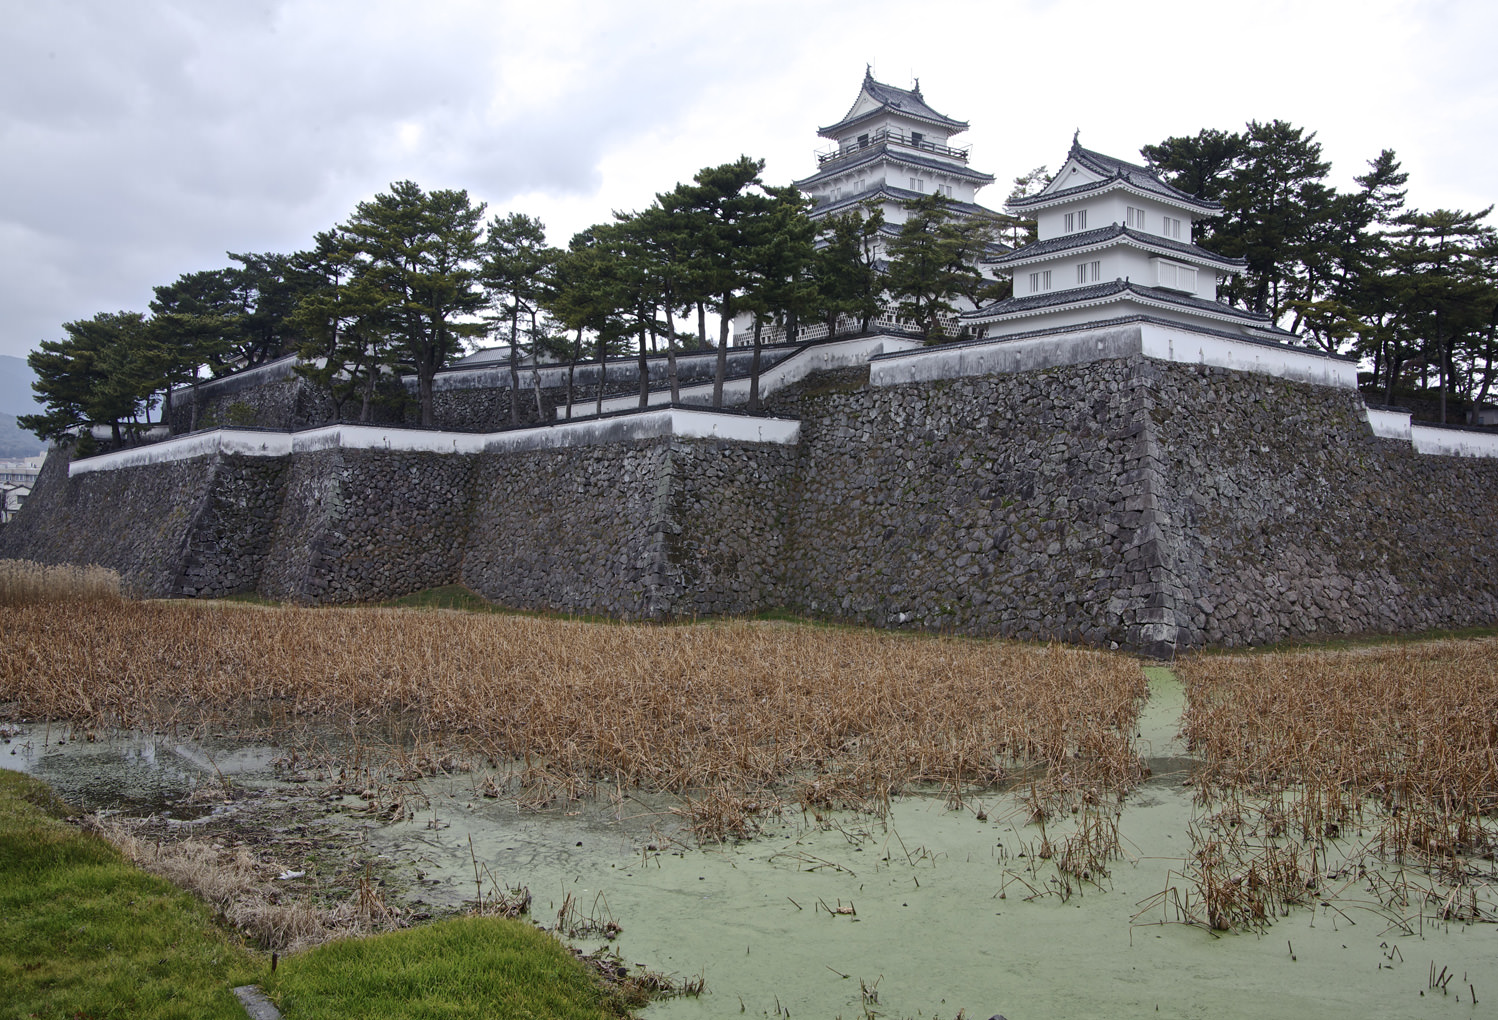 Shimabara Castle built by Shigemasa Matsukura